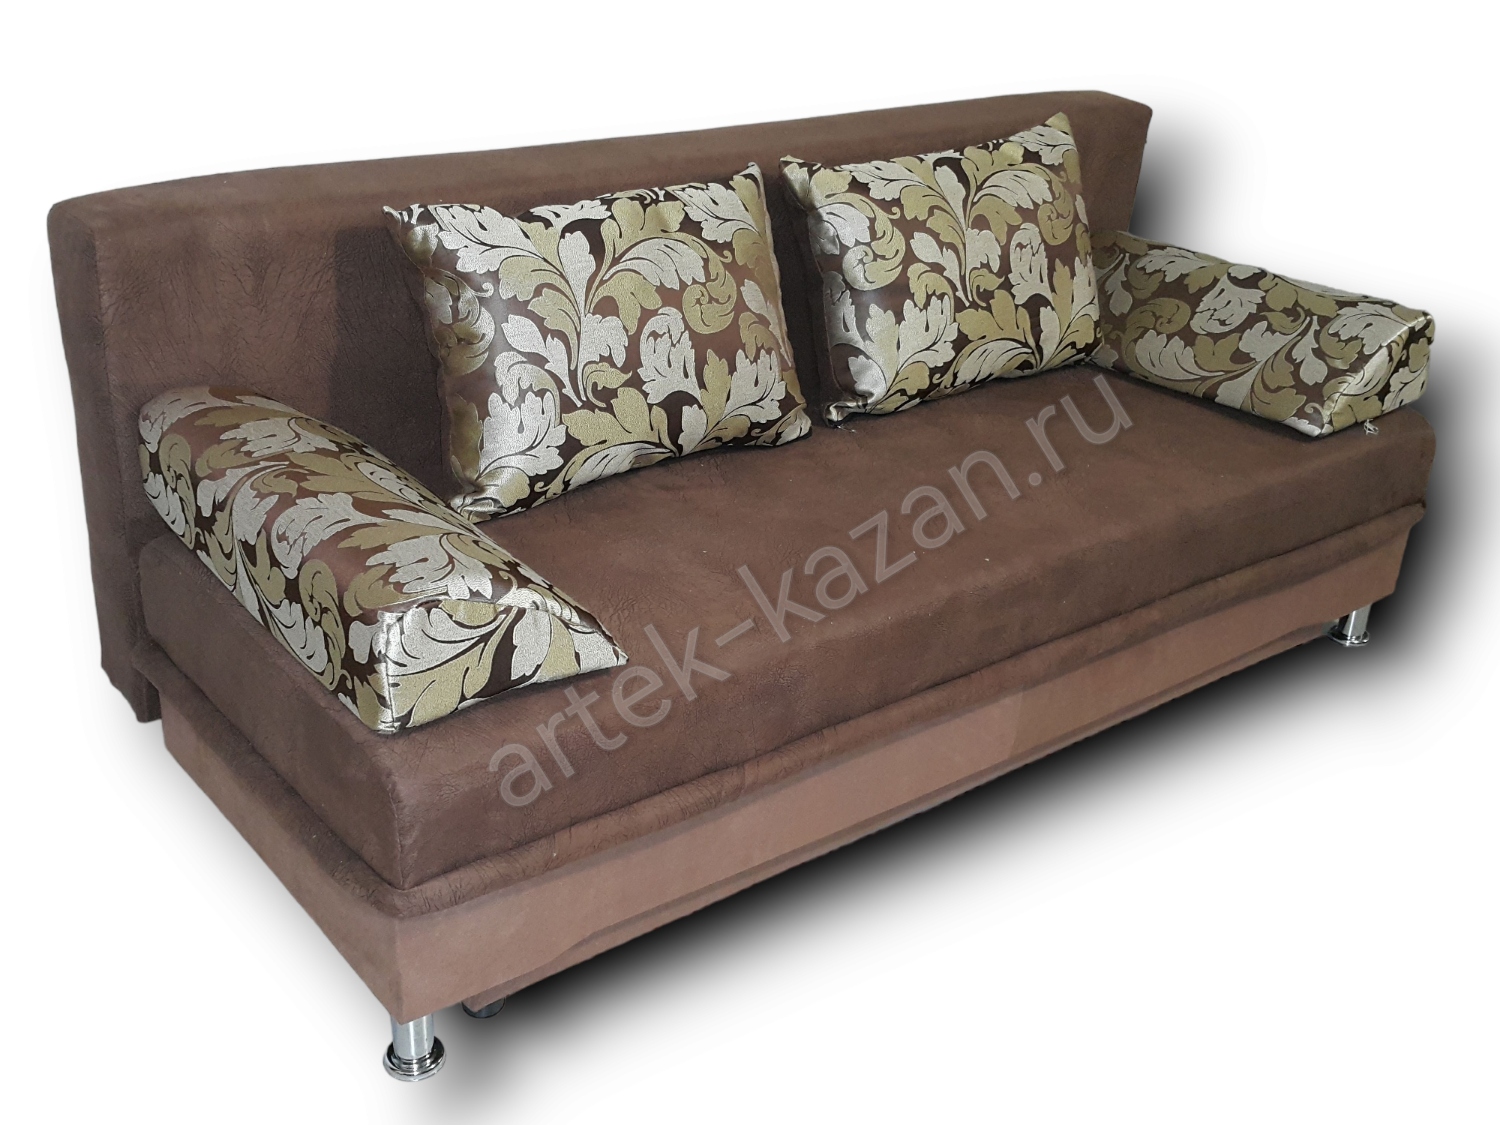 диван еврокнижка Эконом фото № 62. Купить недорогой диван по низкой цене от производителя можно у нас.